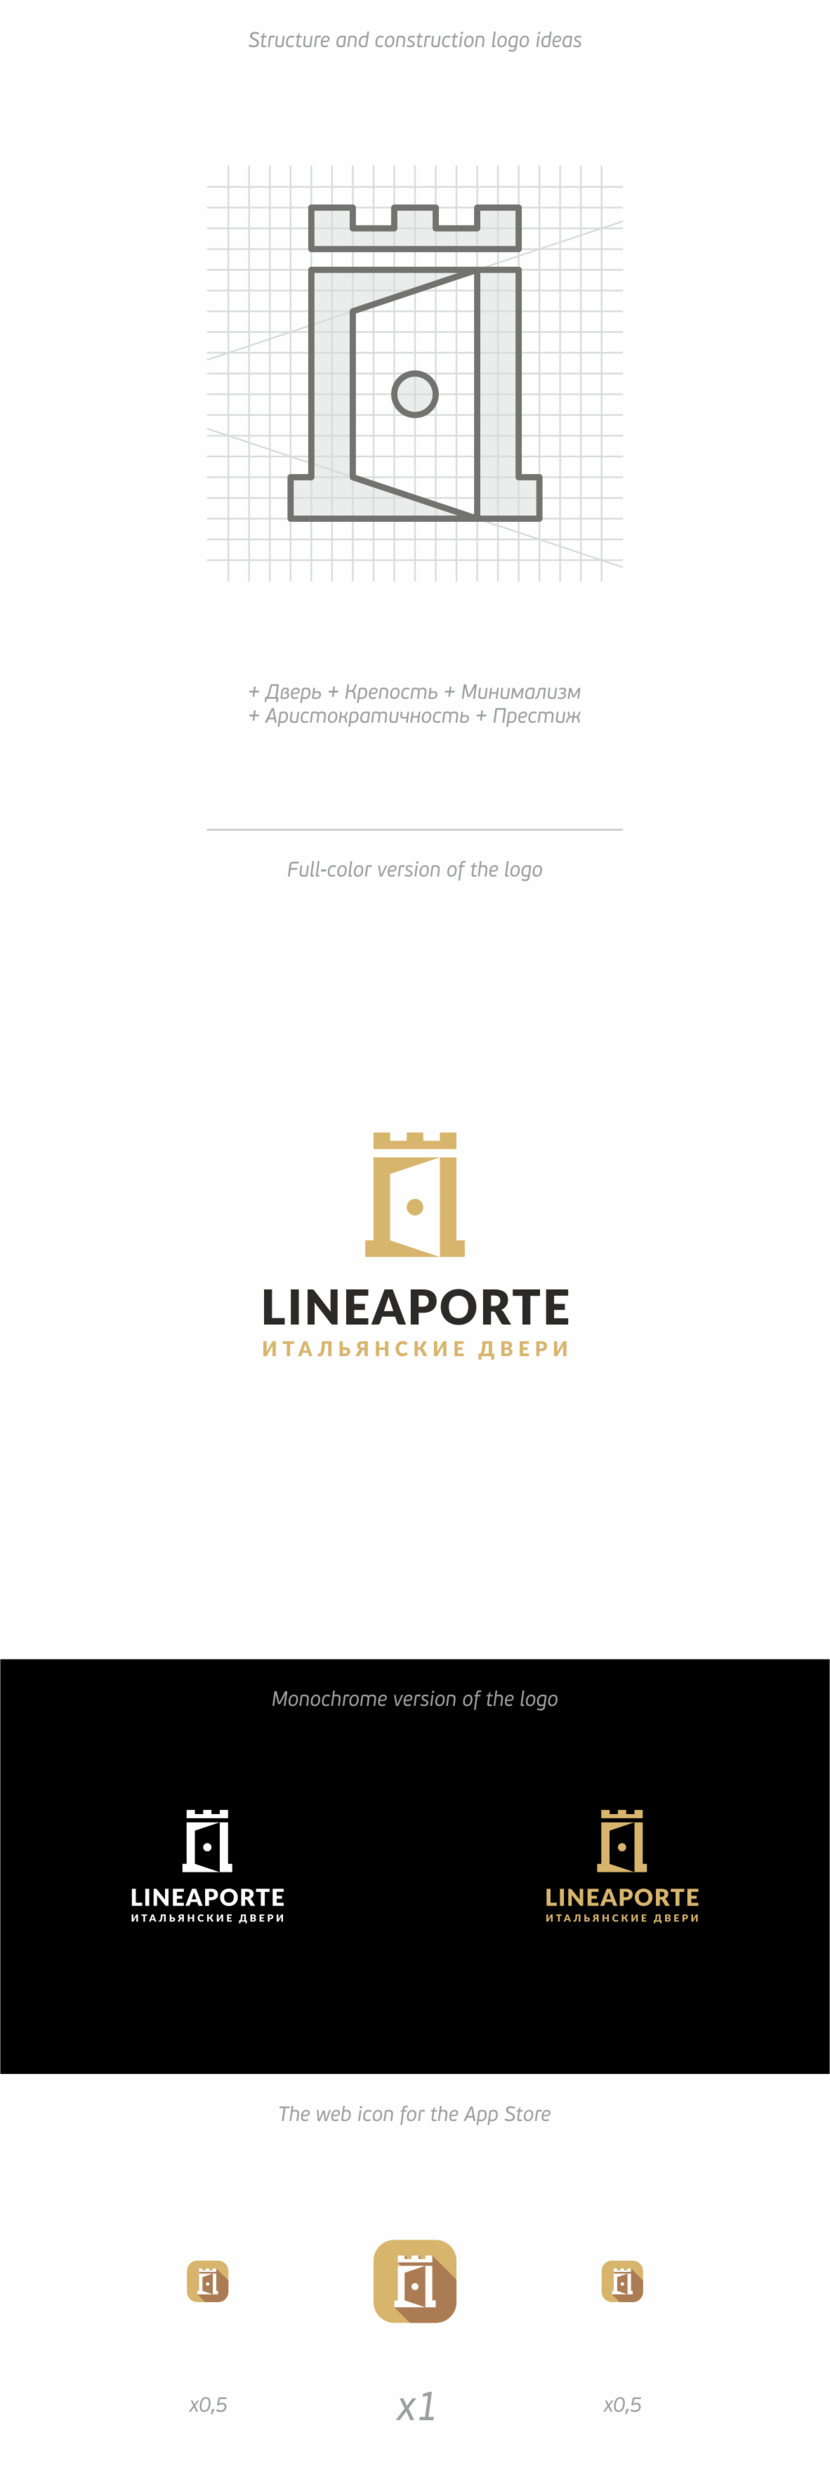 + - Создание логотипа для фабрики дверей «LINEAPORTE».